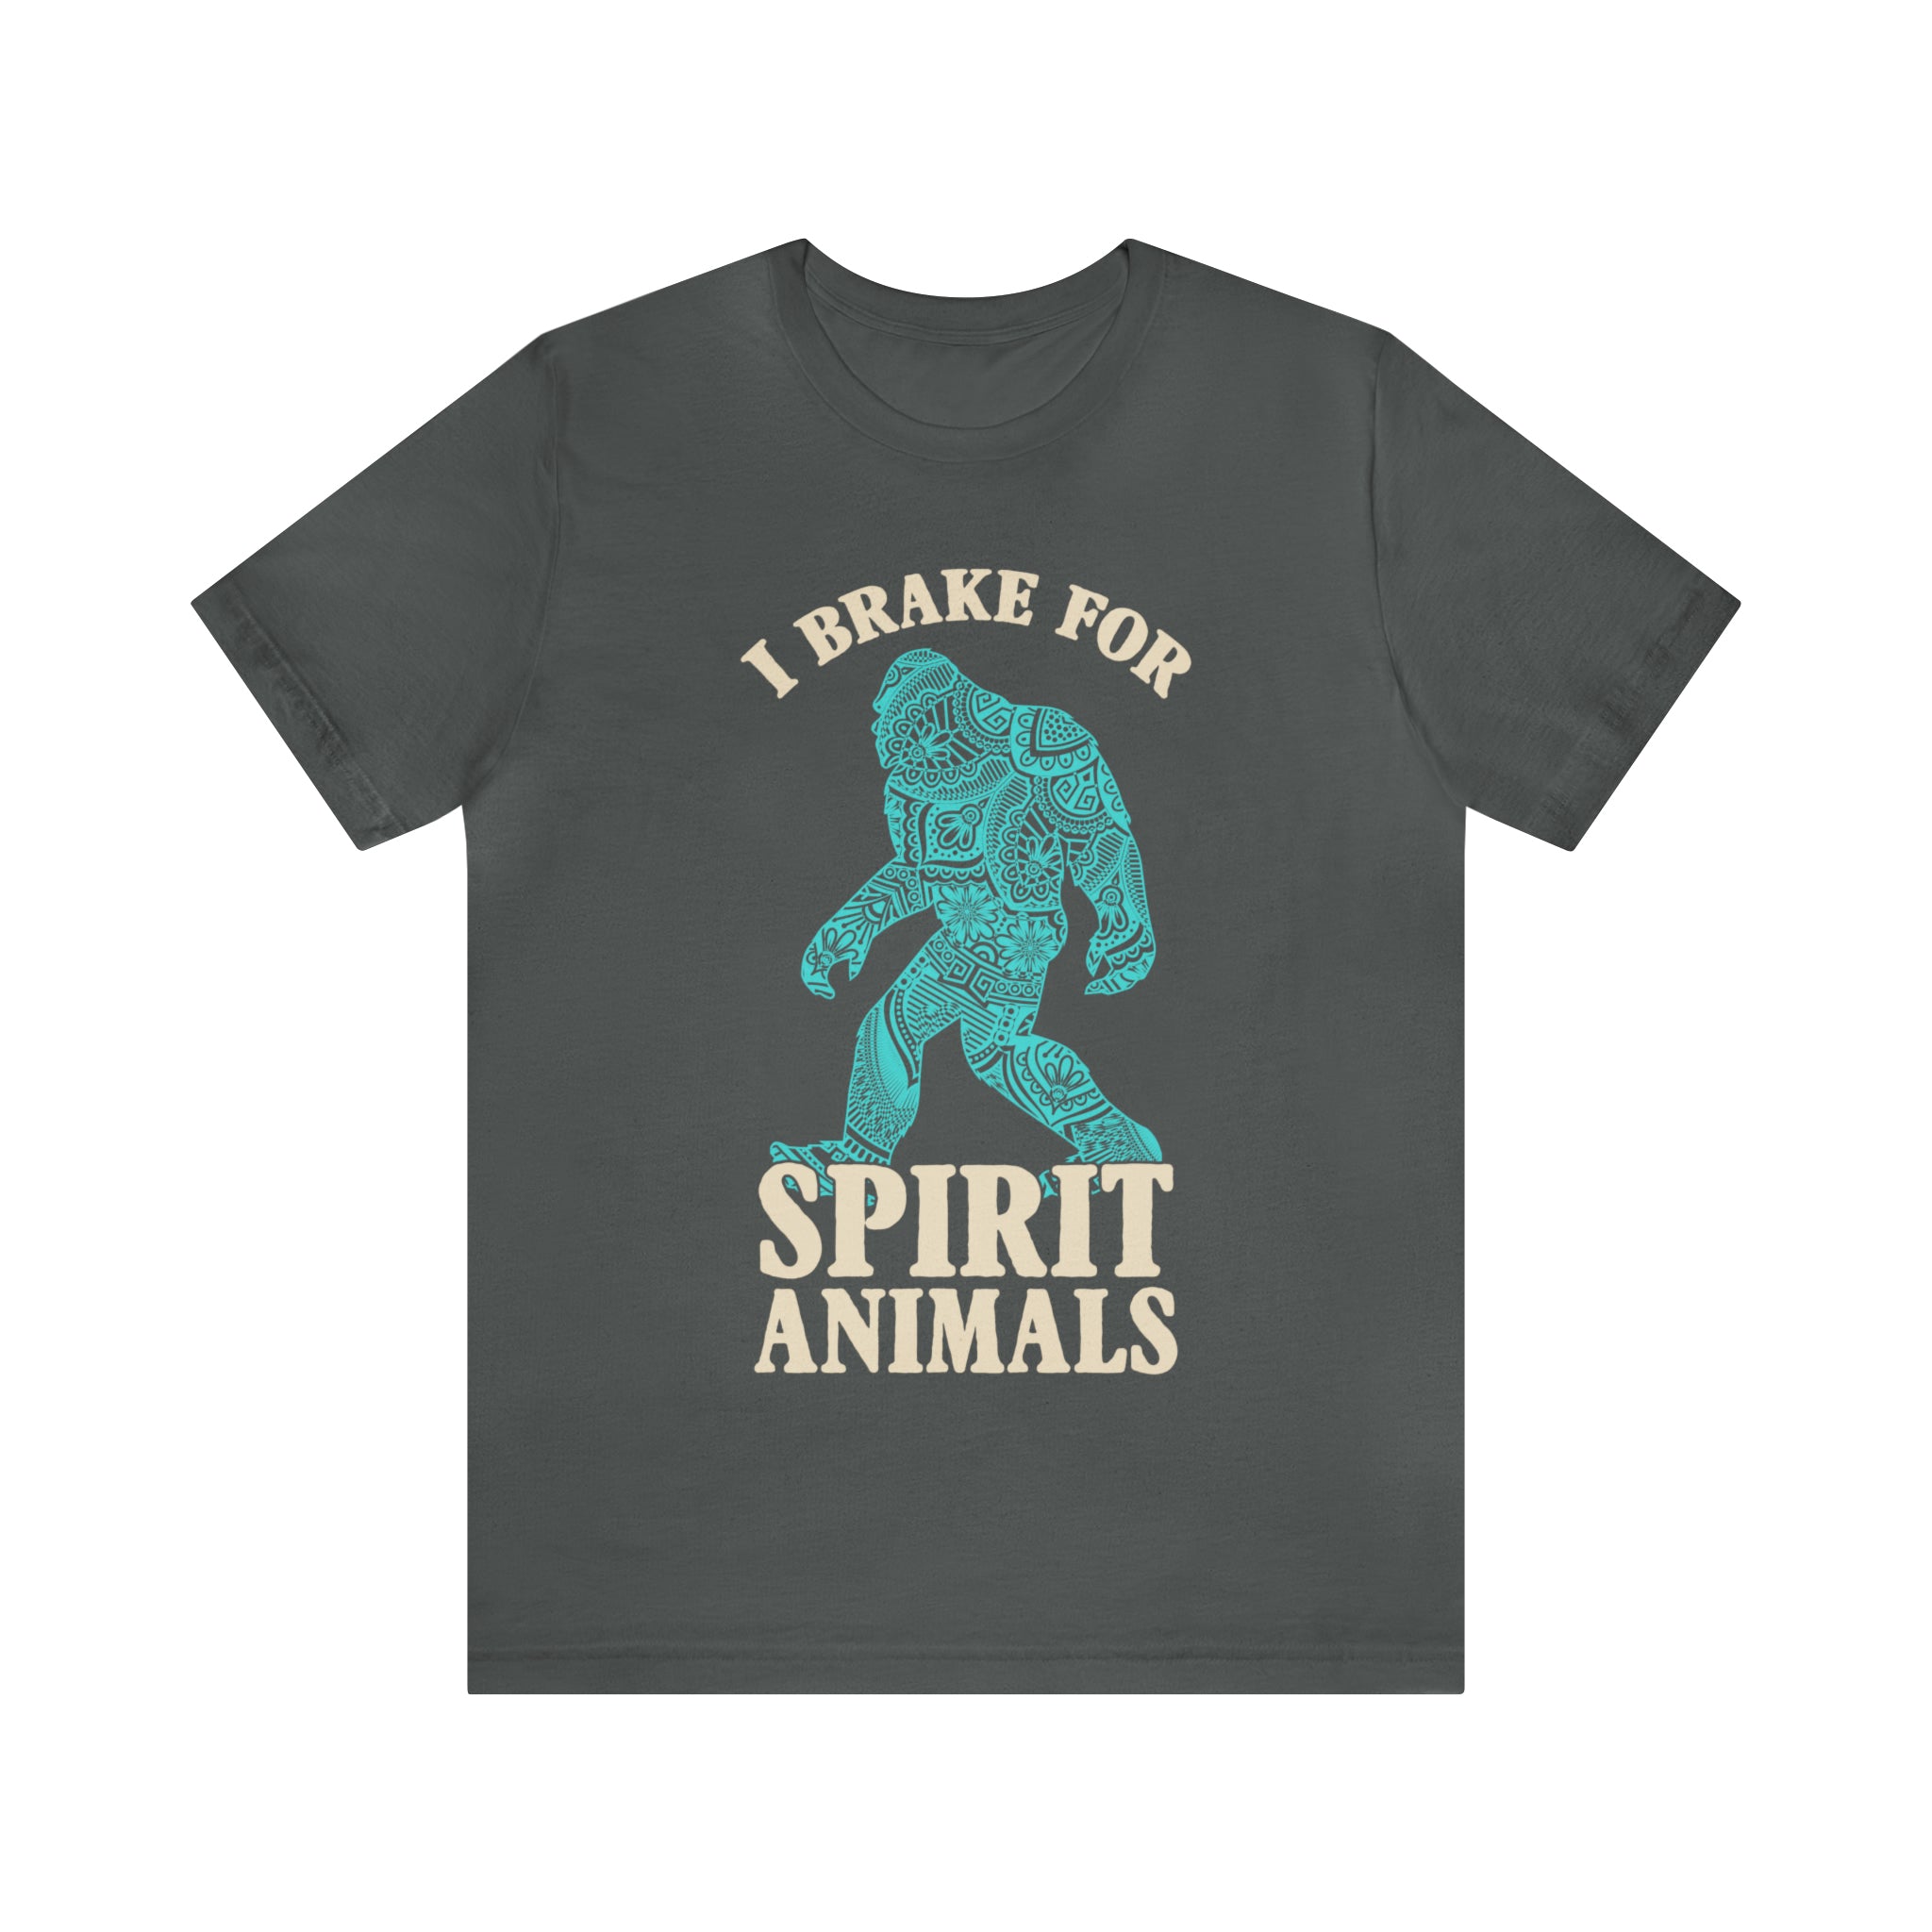 I Brake for Spirit Animals Short Sleeve Tee